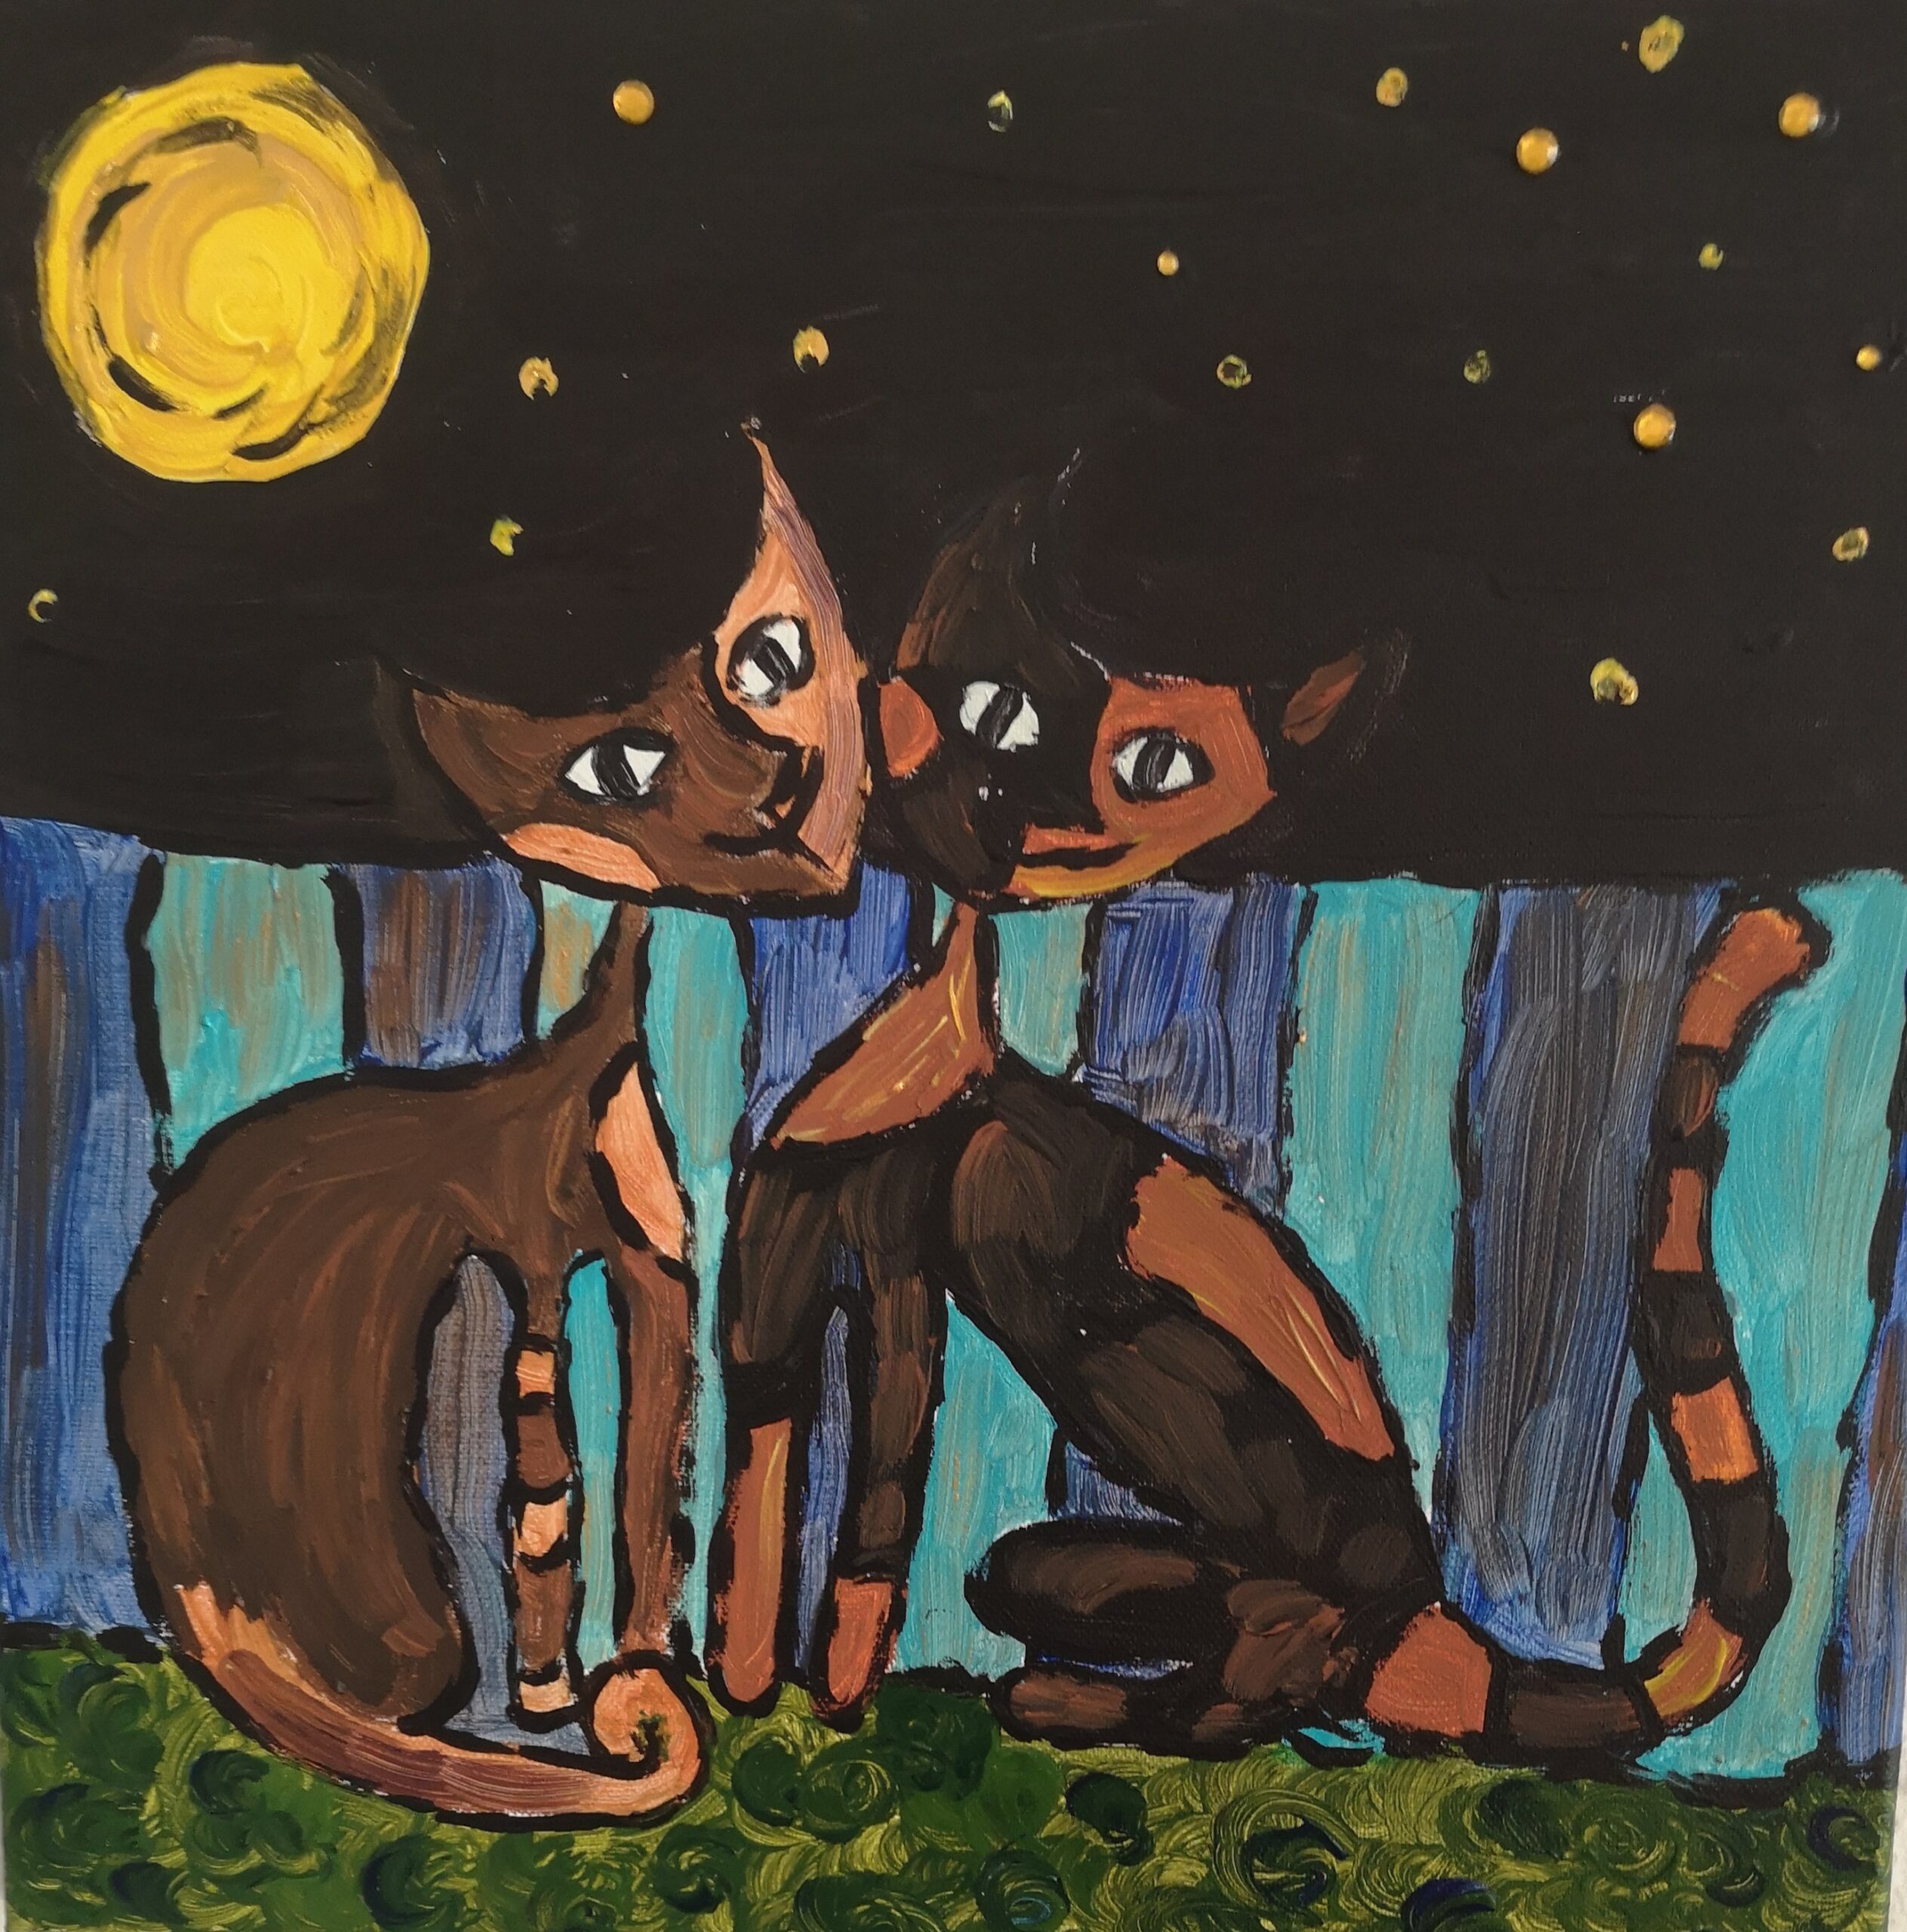 Bild von zwei aneinandergschmiegte Katzen in der Nacht mit Vollmond und Sternen vor einem blauen Zaun